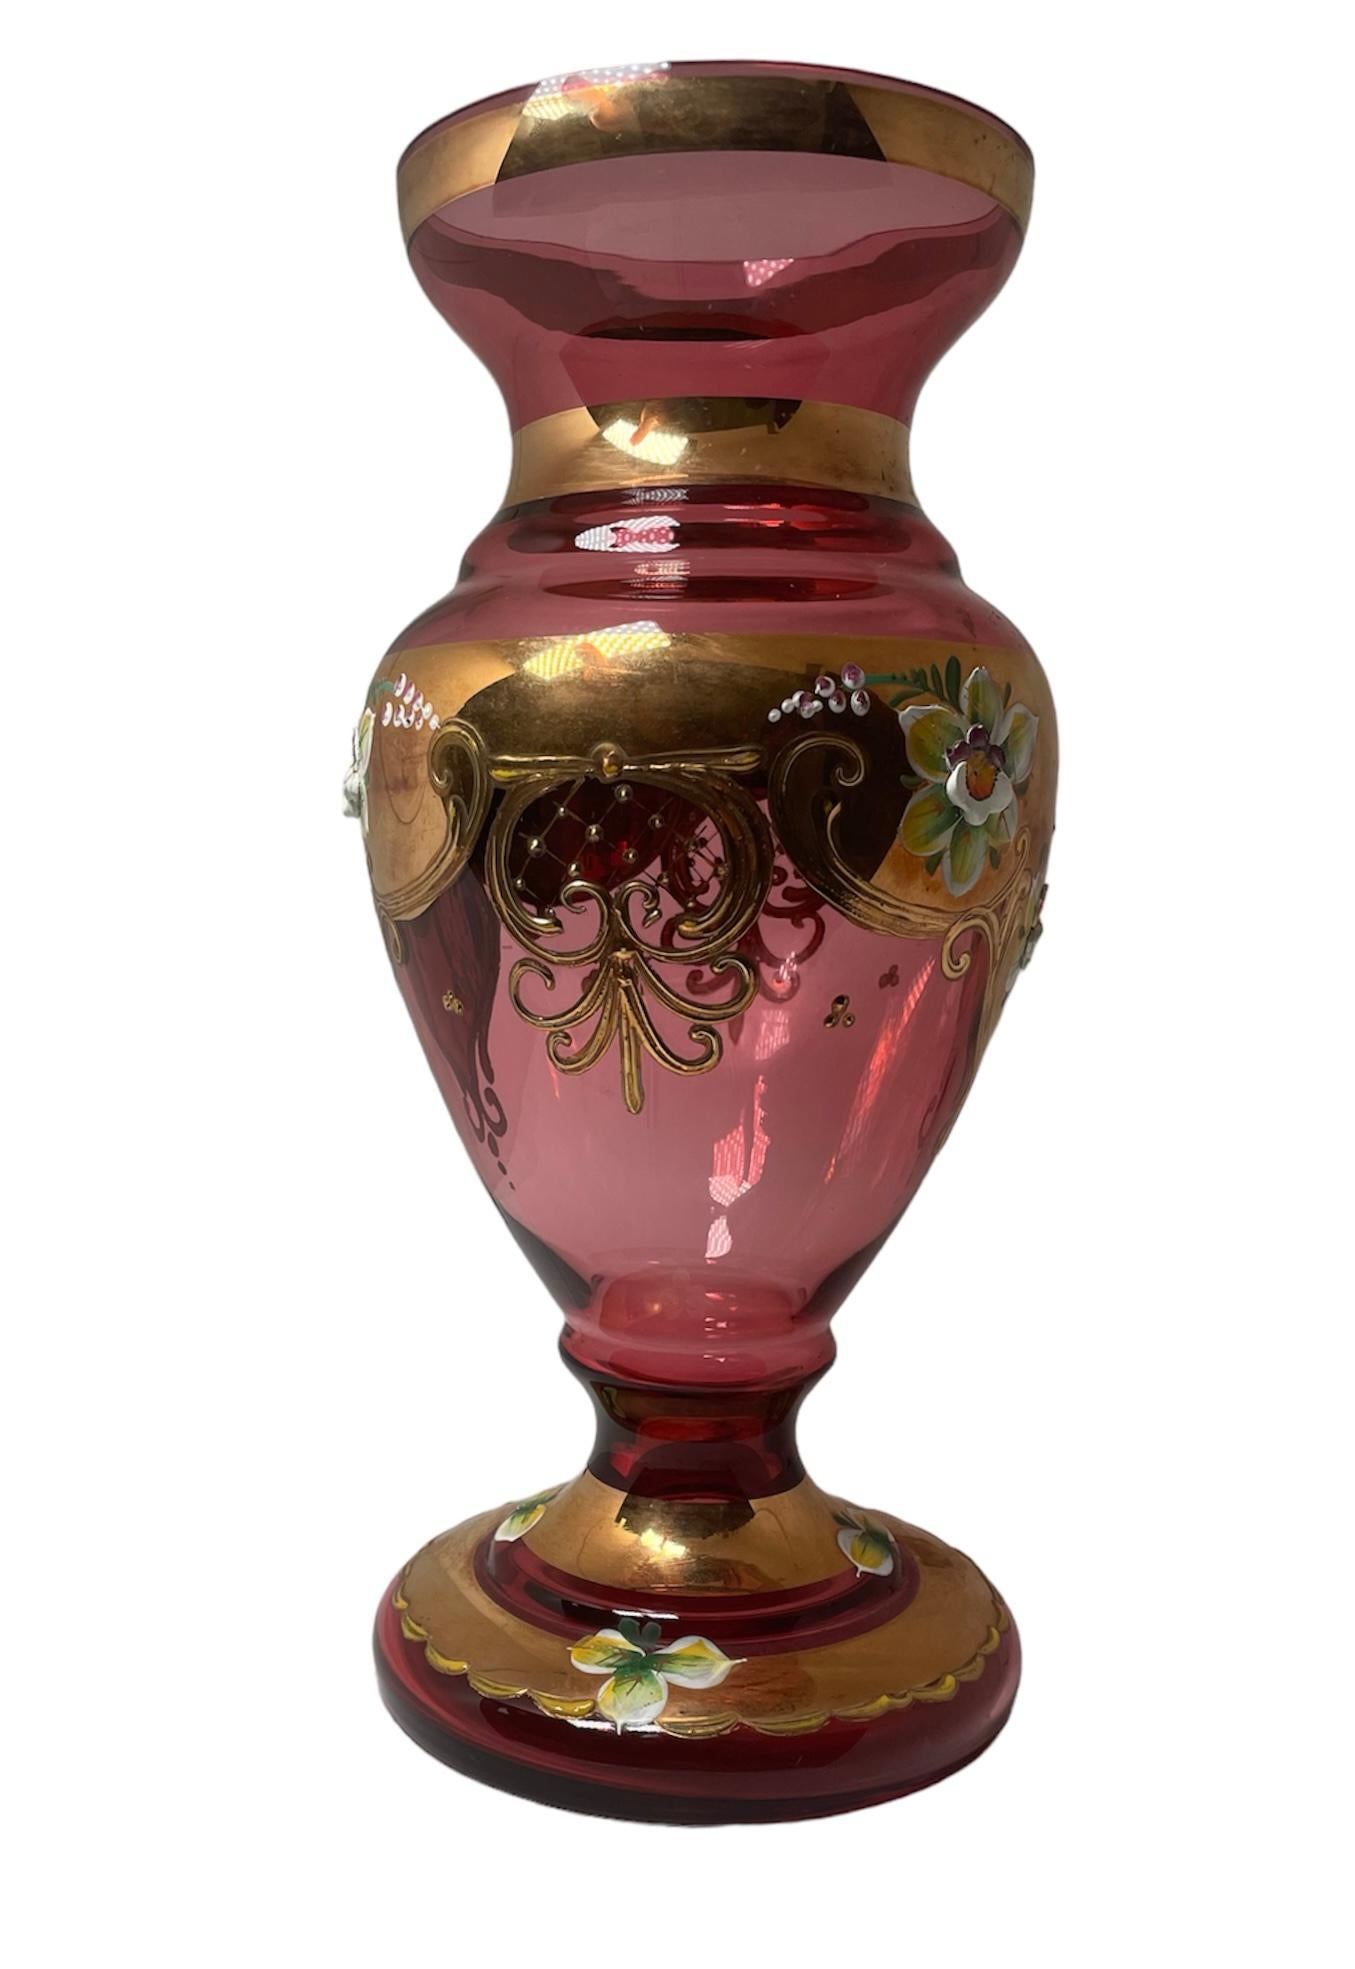 Il s'agit d'un vase en verre doré de Bohème tchèque. Il représente un vase en verre de couleur canneberge clair, décoré de grandes fleurs émaillées peintes à la main et de rinceaux dorés. Une guirlande festonnée dorée avec des feuilles émaillées